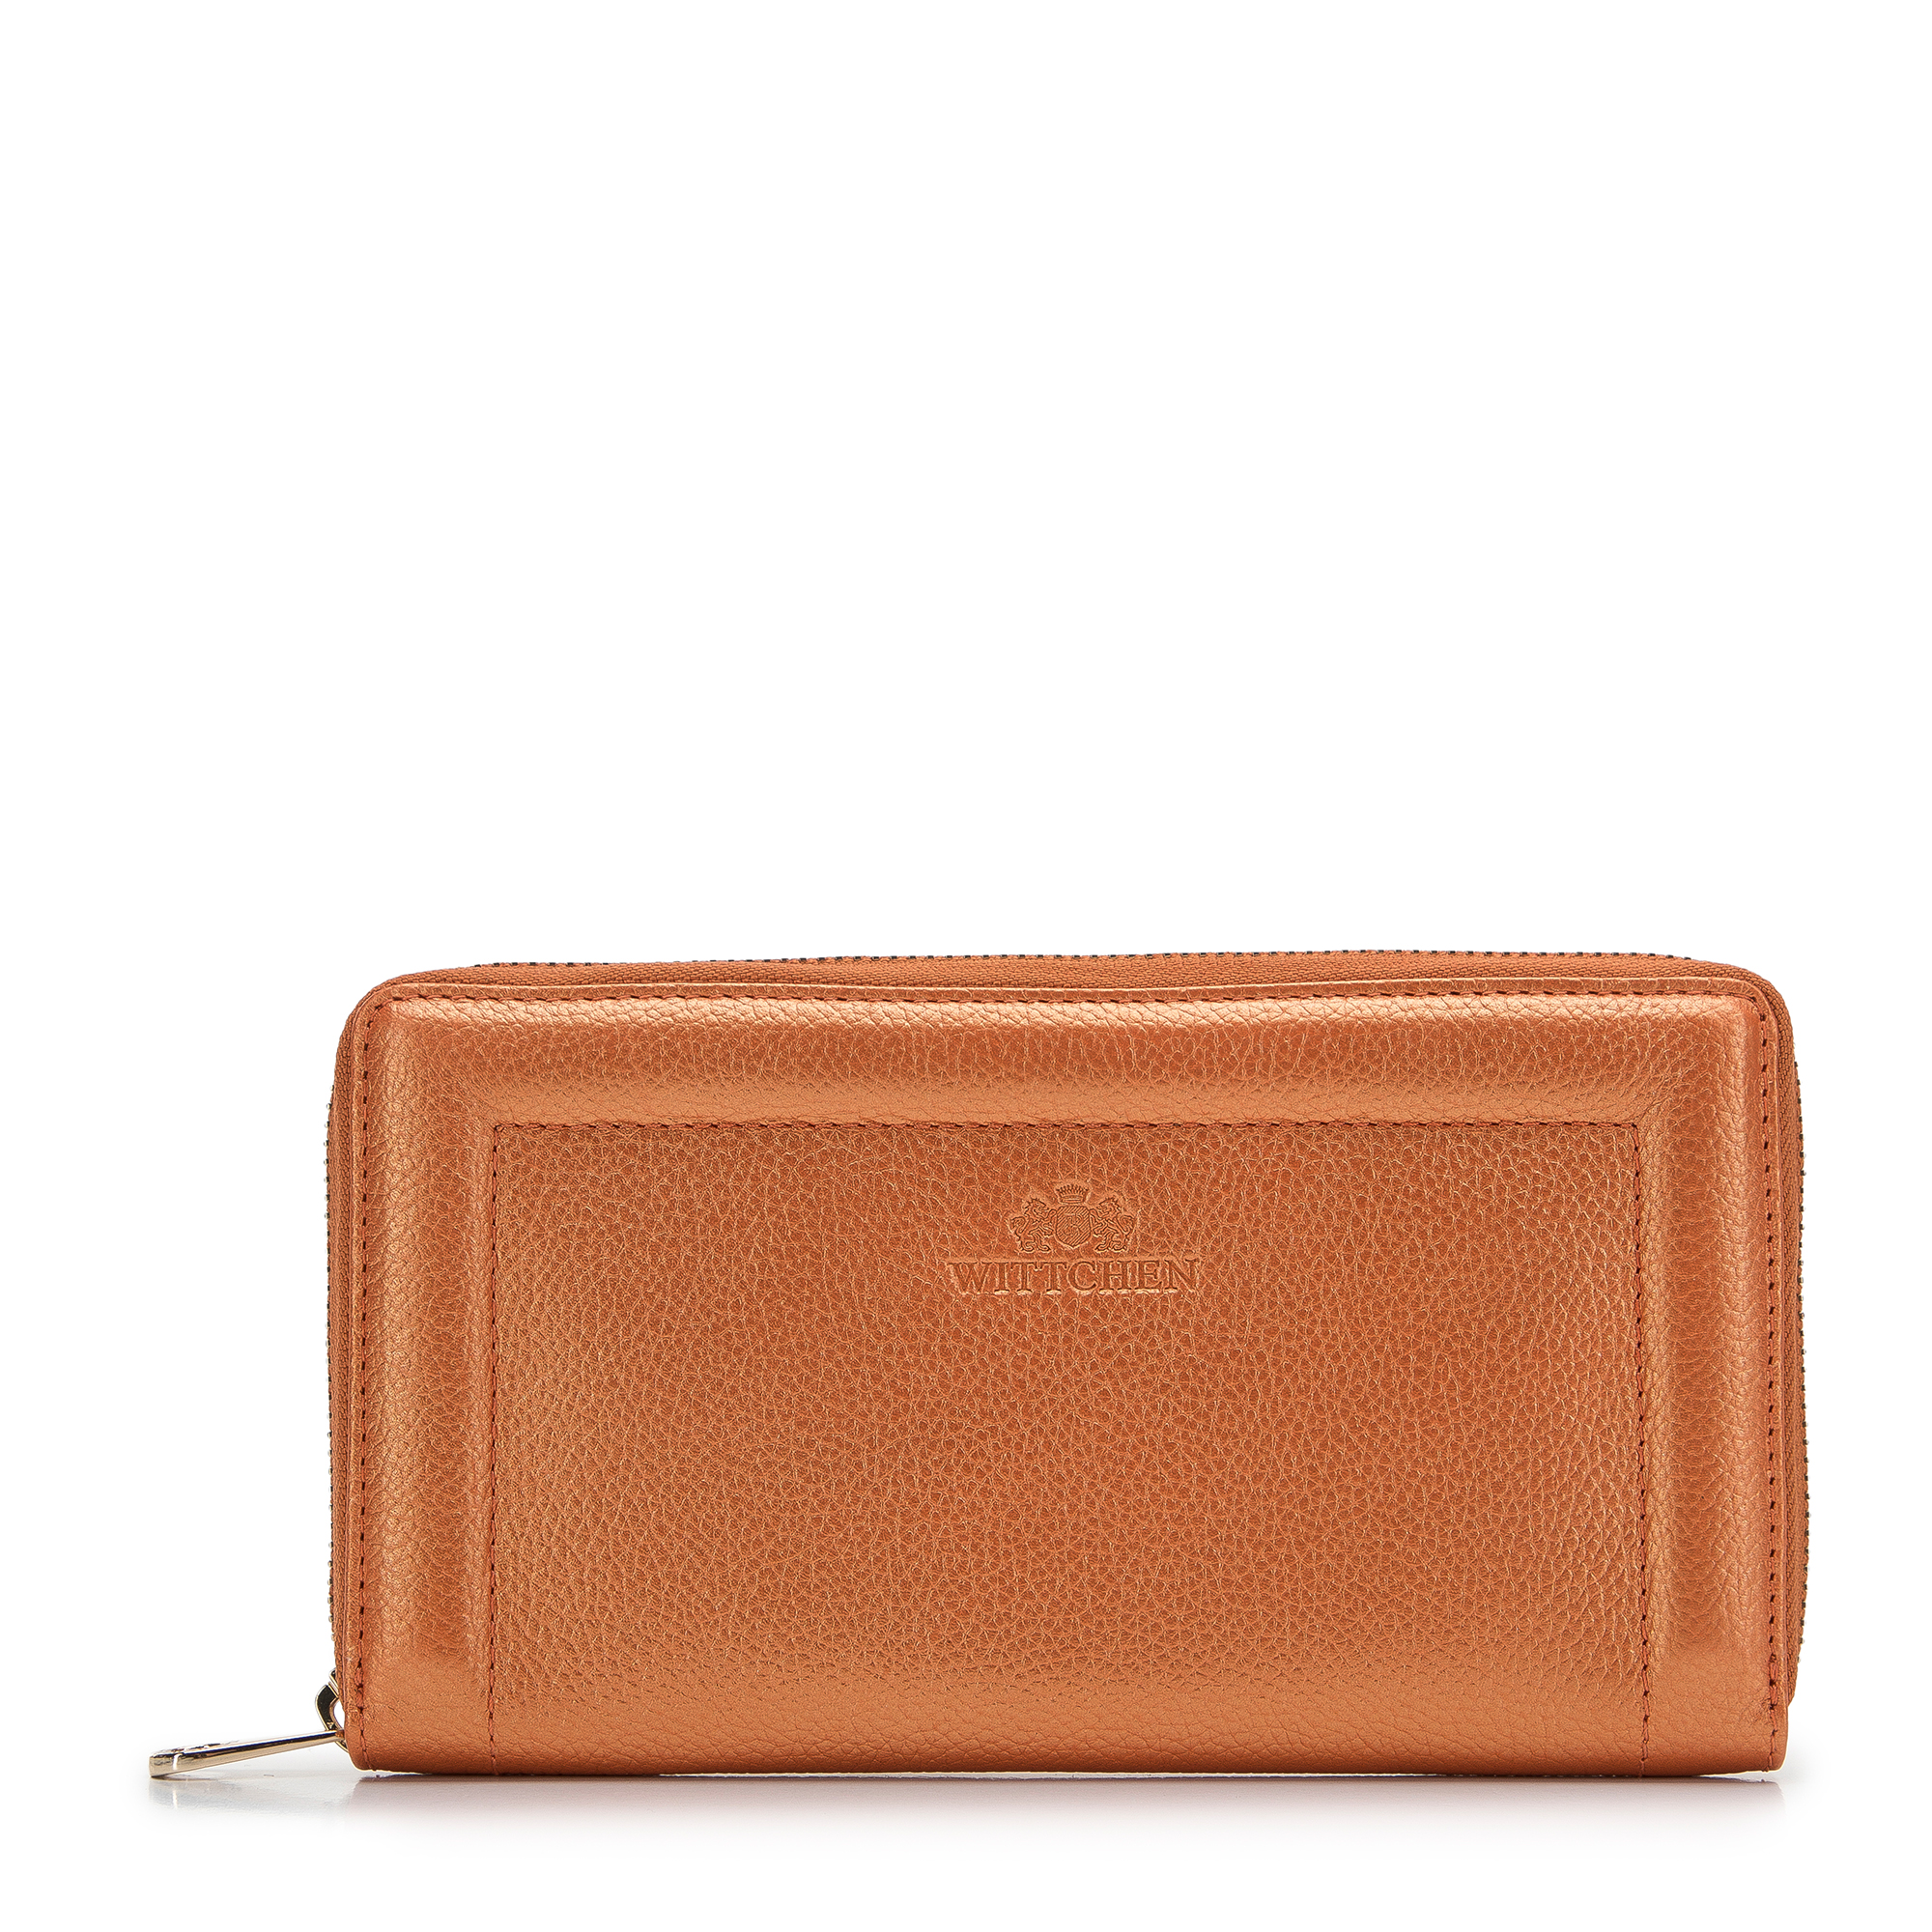 E-shop Dámska kožená peňaženka s ozdobným okrajom, veľká, oranžová 14-1-936-6